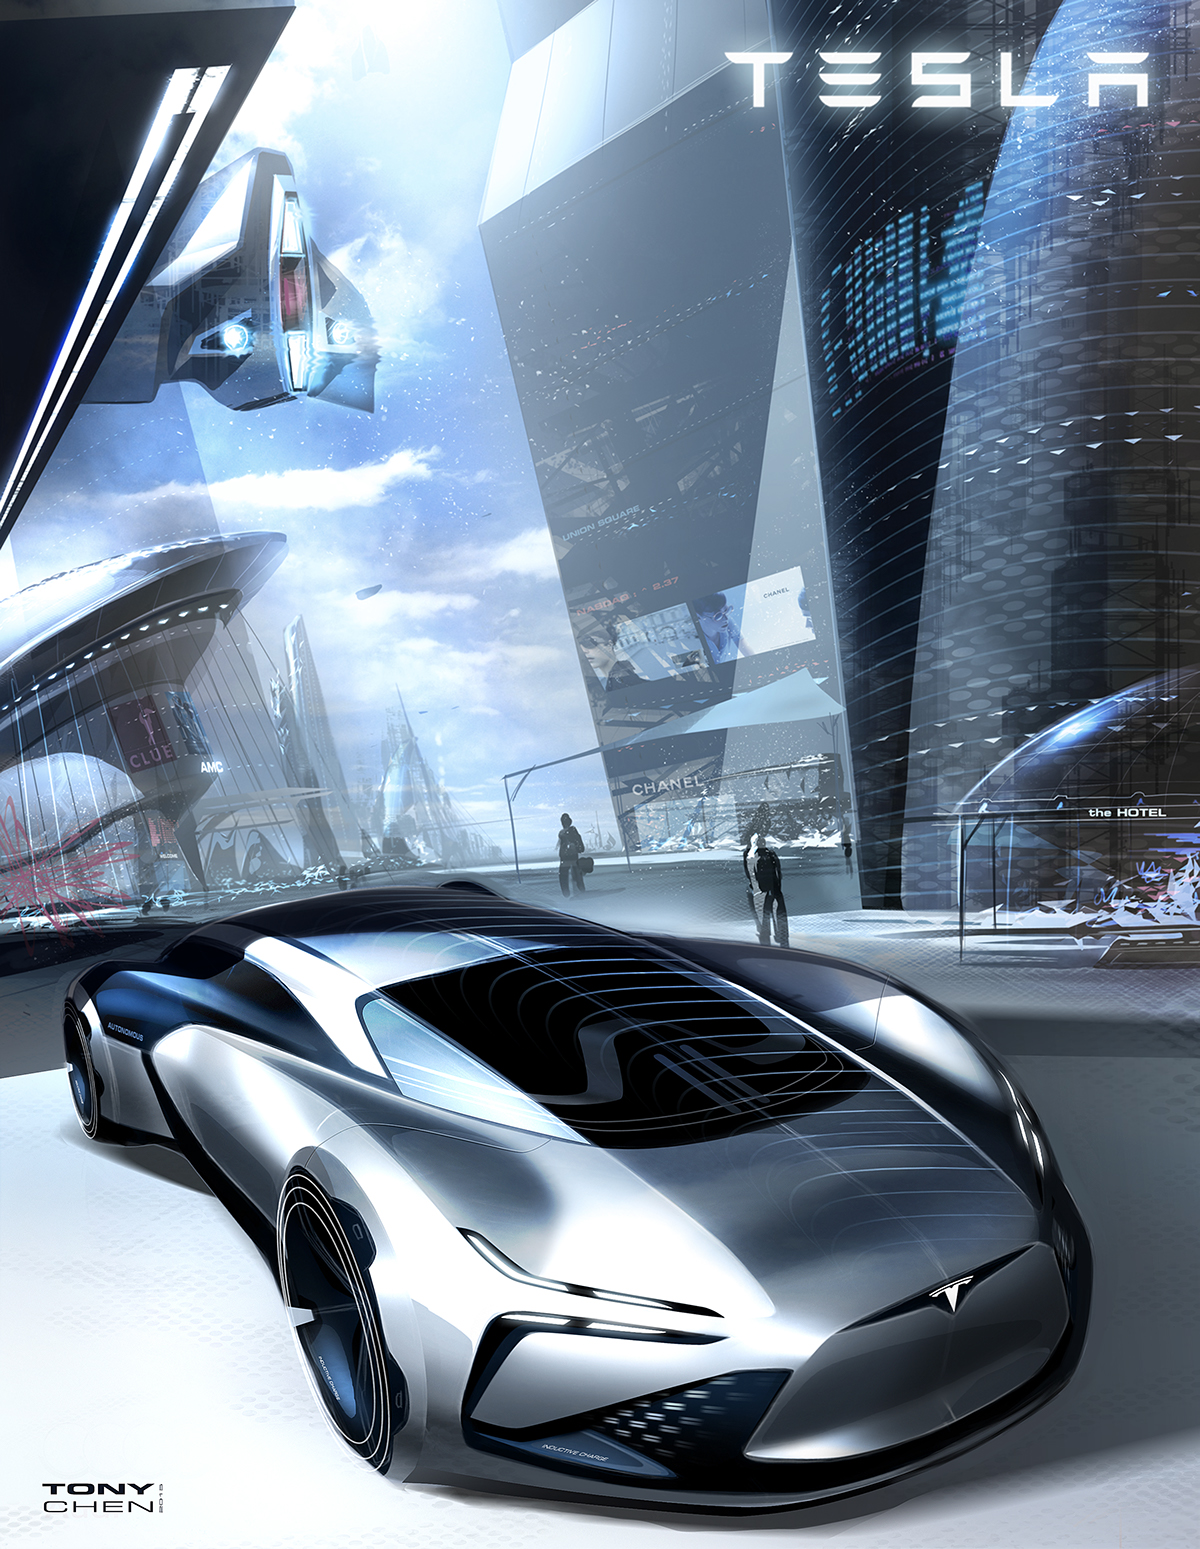 未来感极强的一组汽车手绘,走在潮流与科技的前端